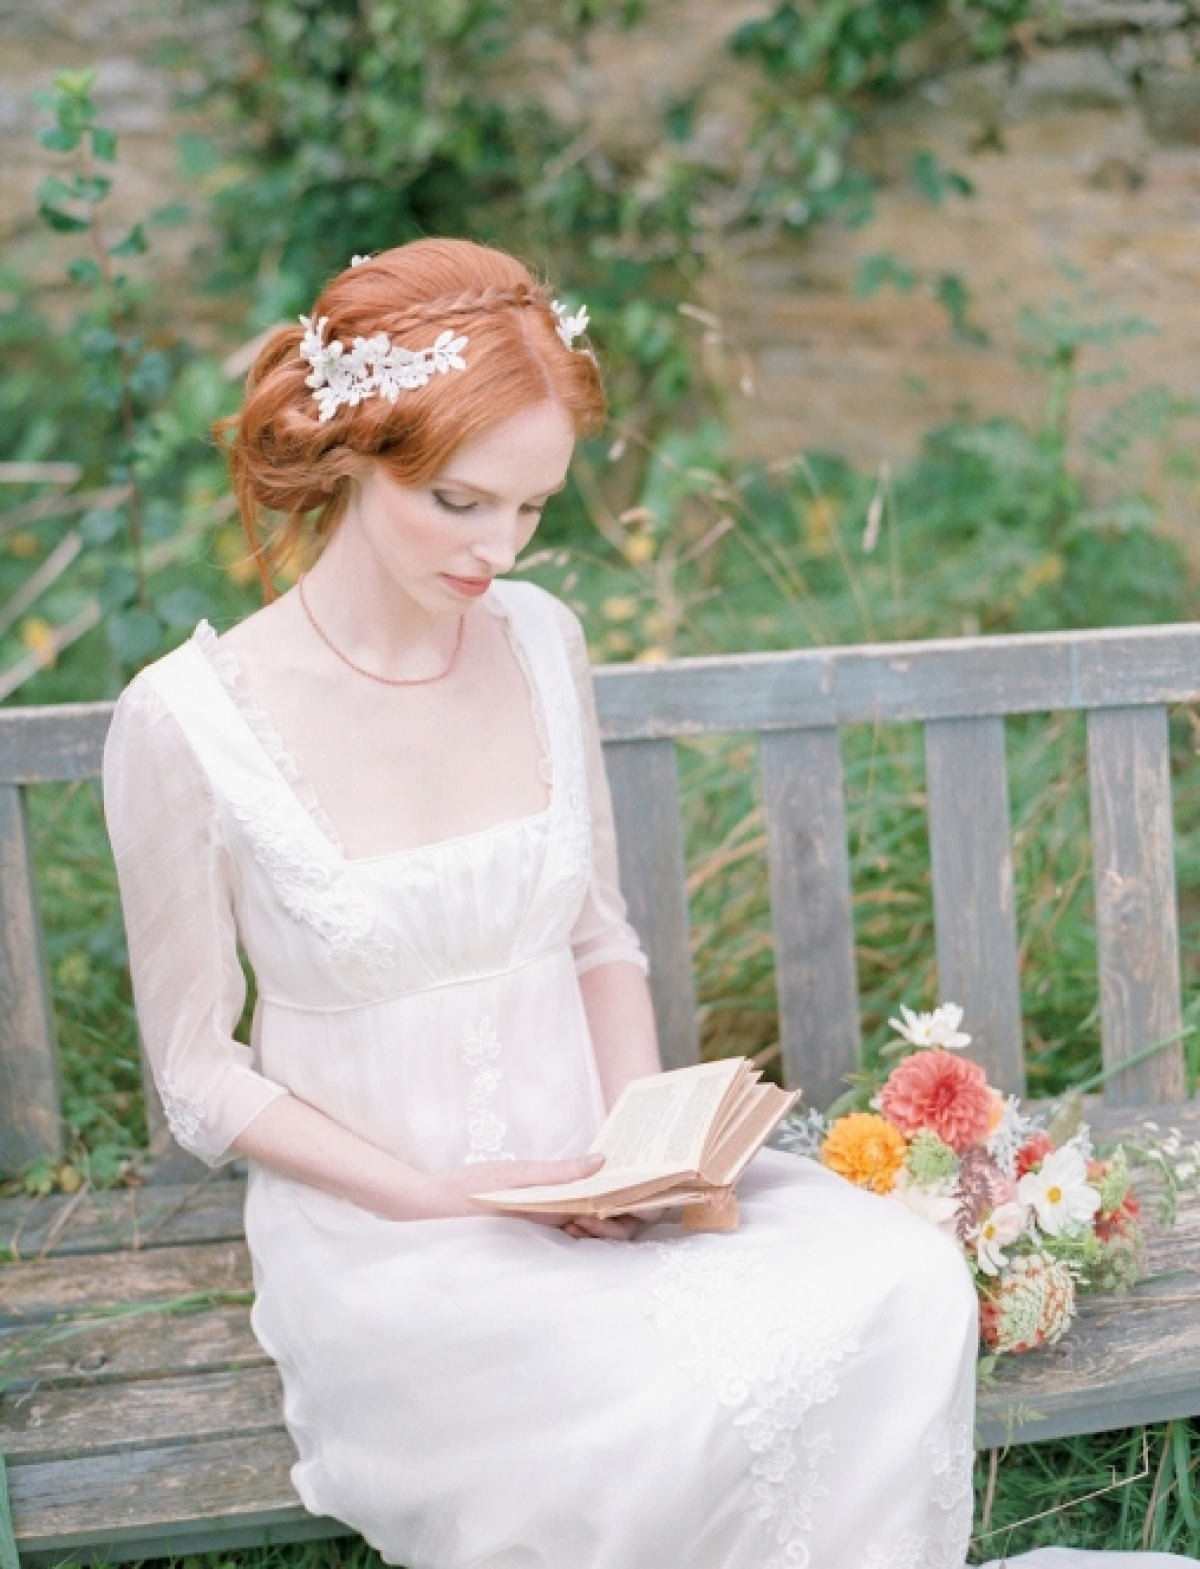 Jane Austen Style Weddings